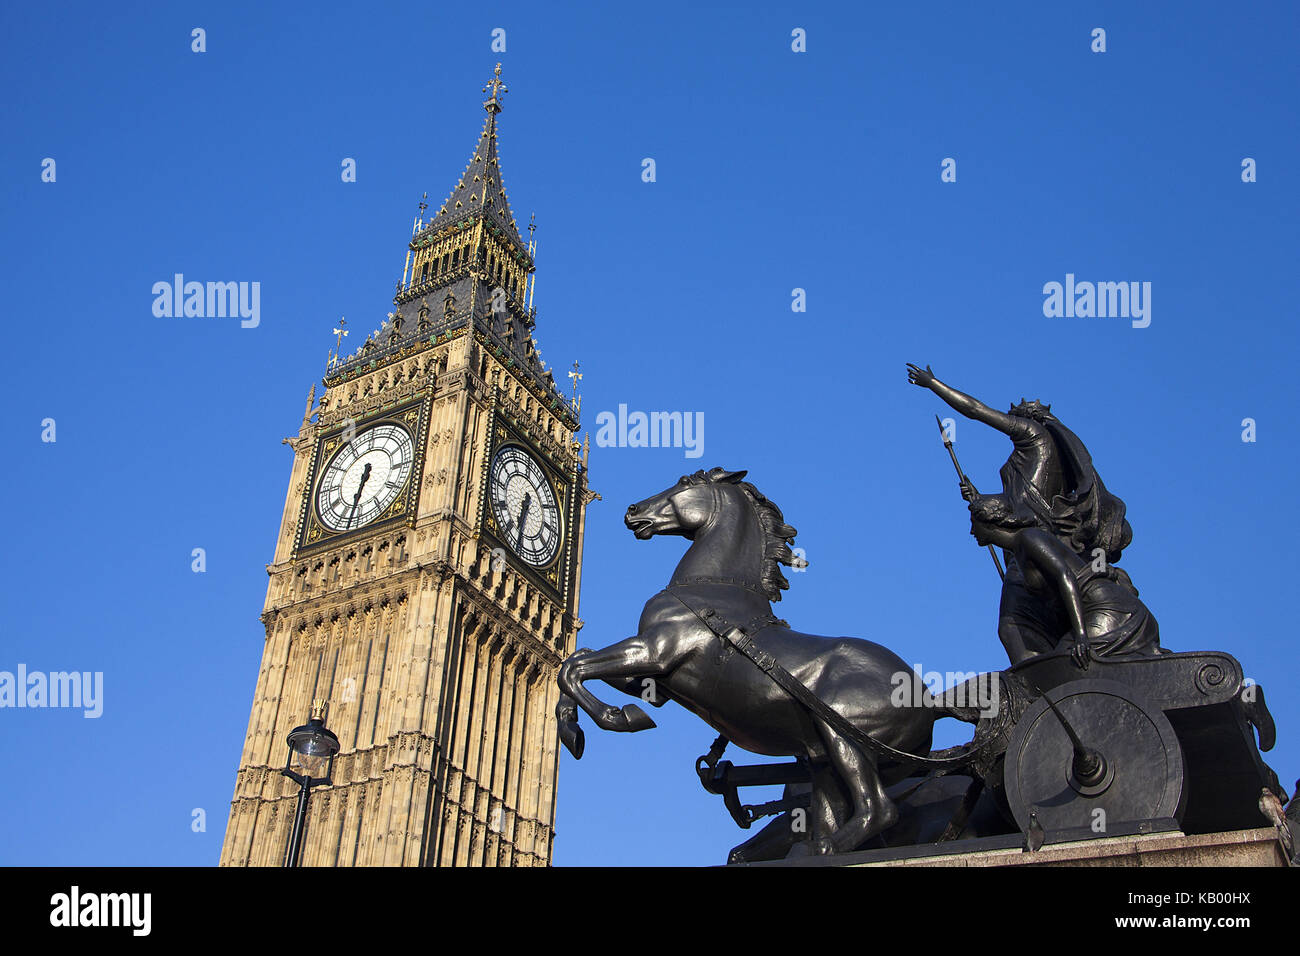 Gran Bretaña, Londres, el palacio de Westminster, las casas del parlamento, el monumento, el Big Ben, Foto de stock